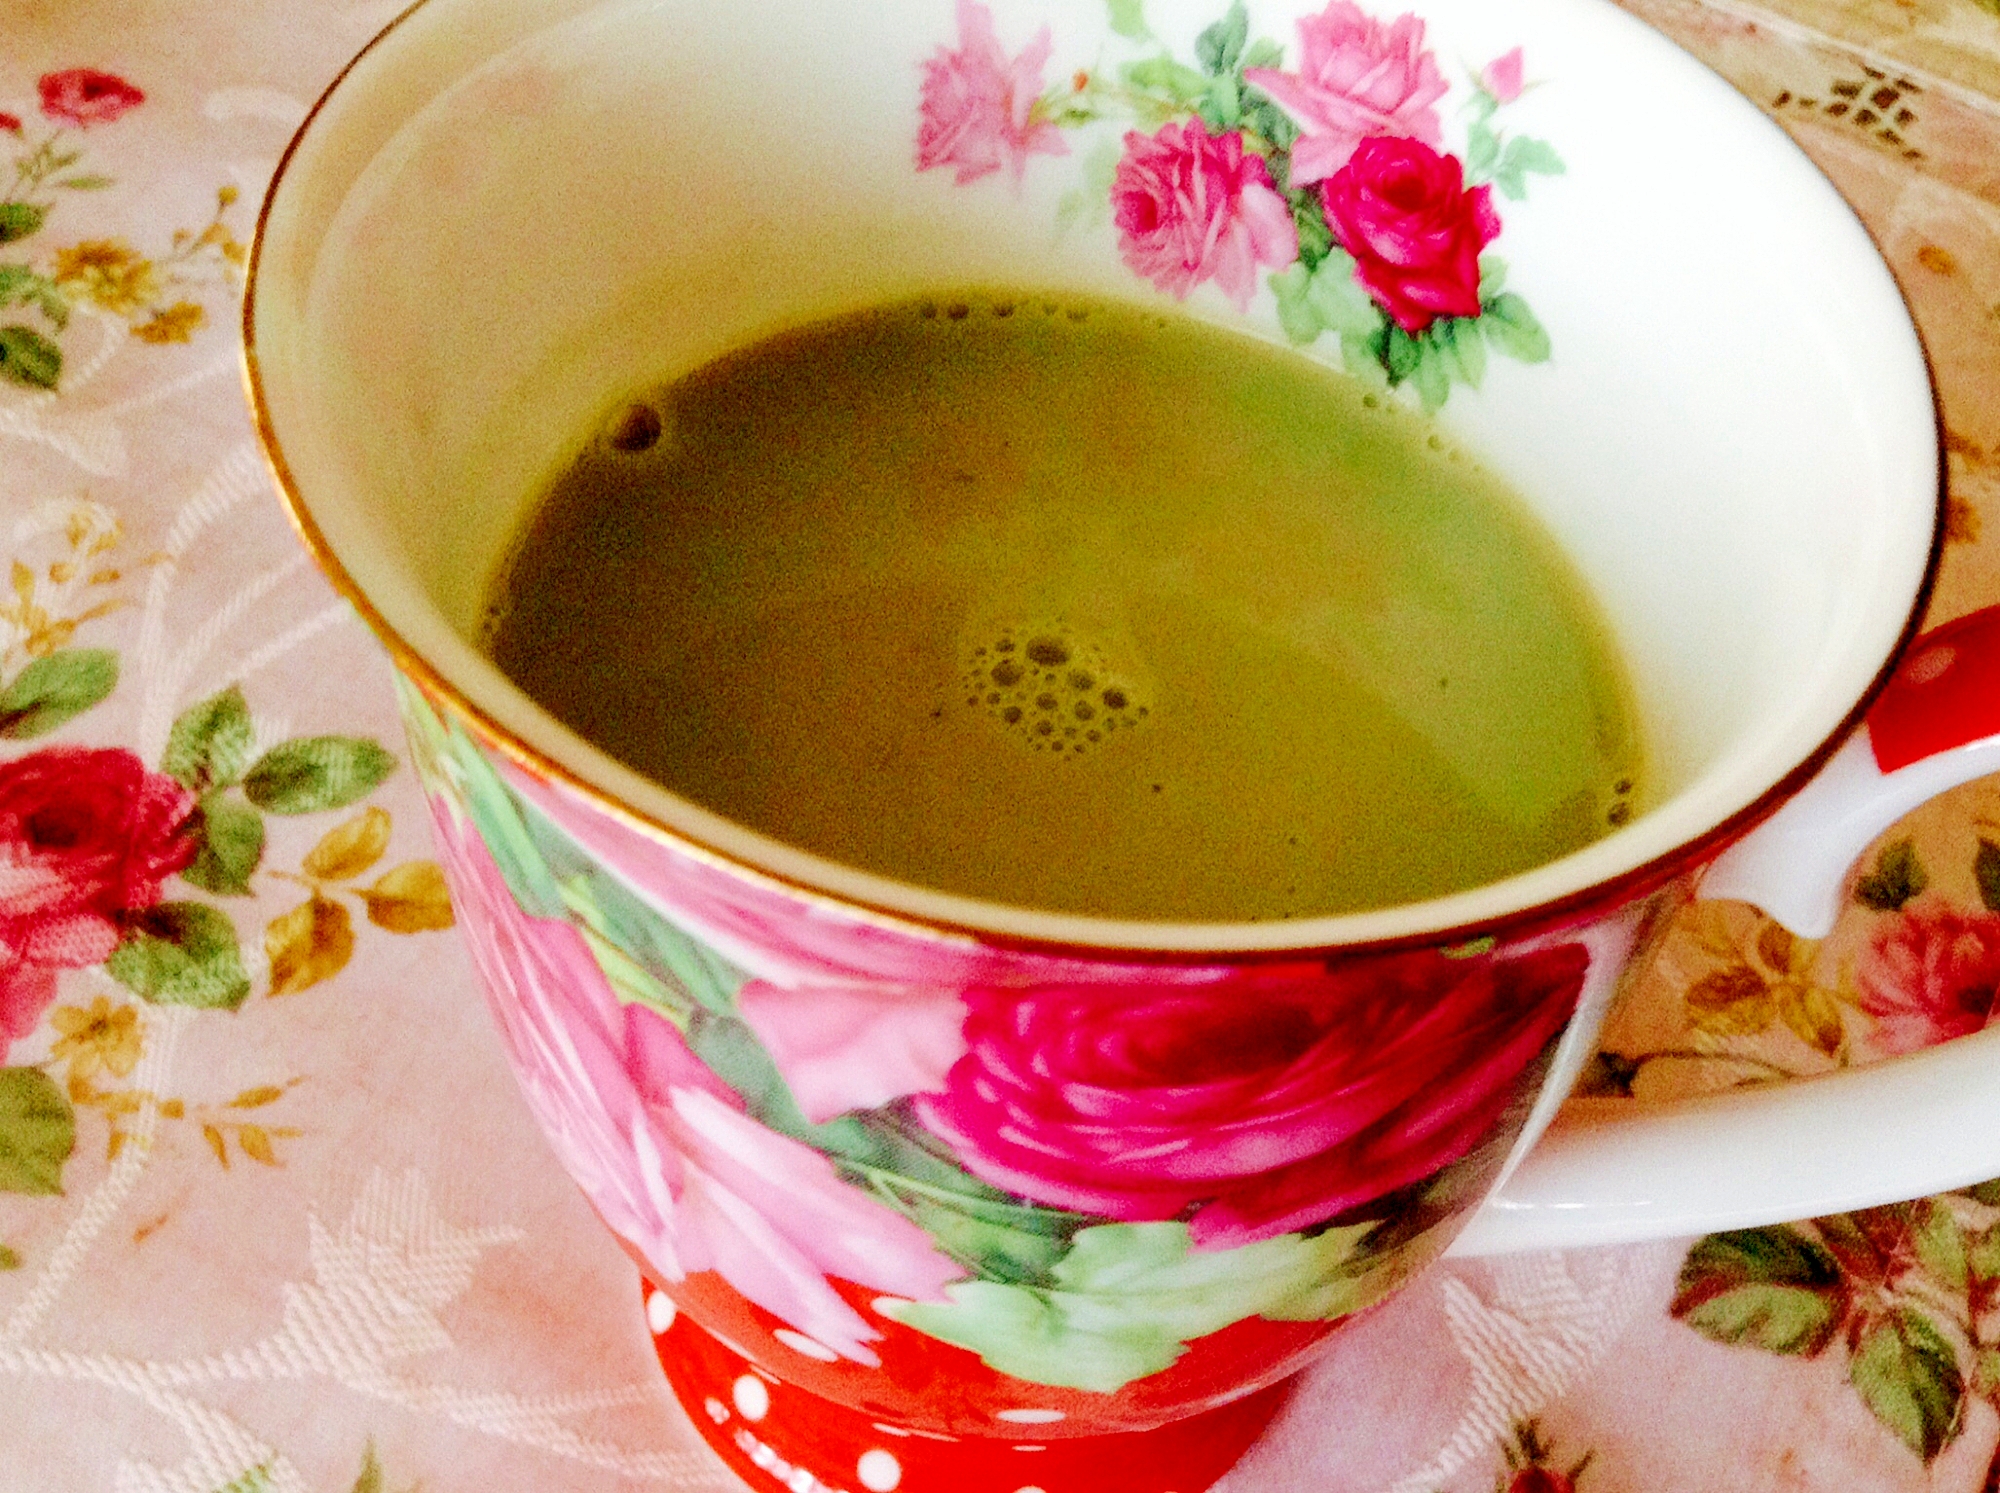 青汁を美味しく❤︎はったい粉ほうじ茶ラテ